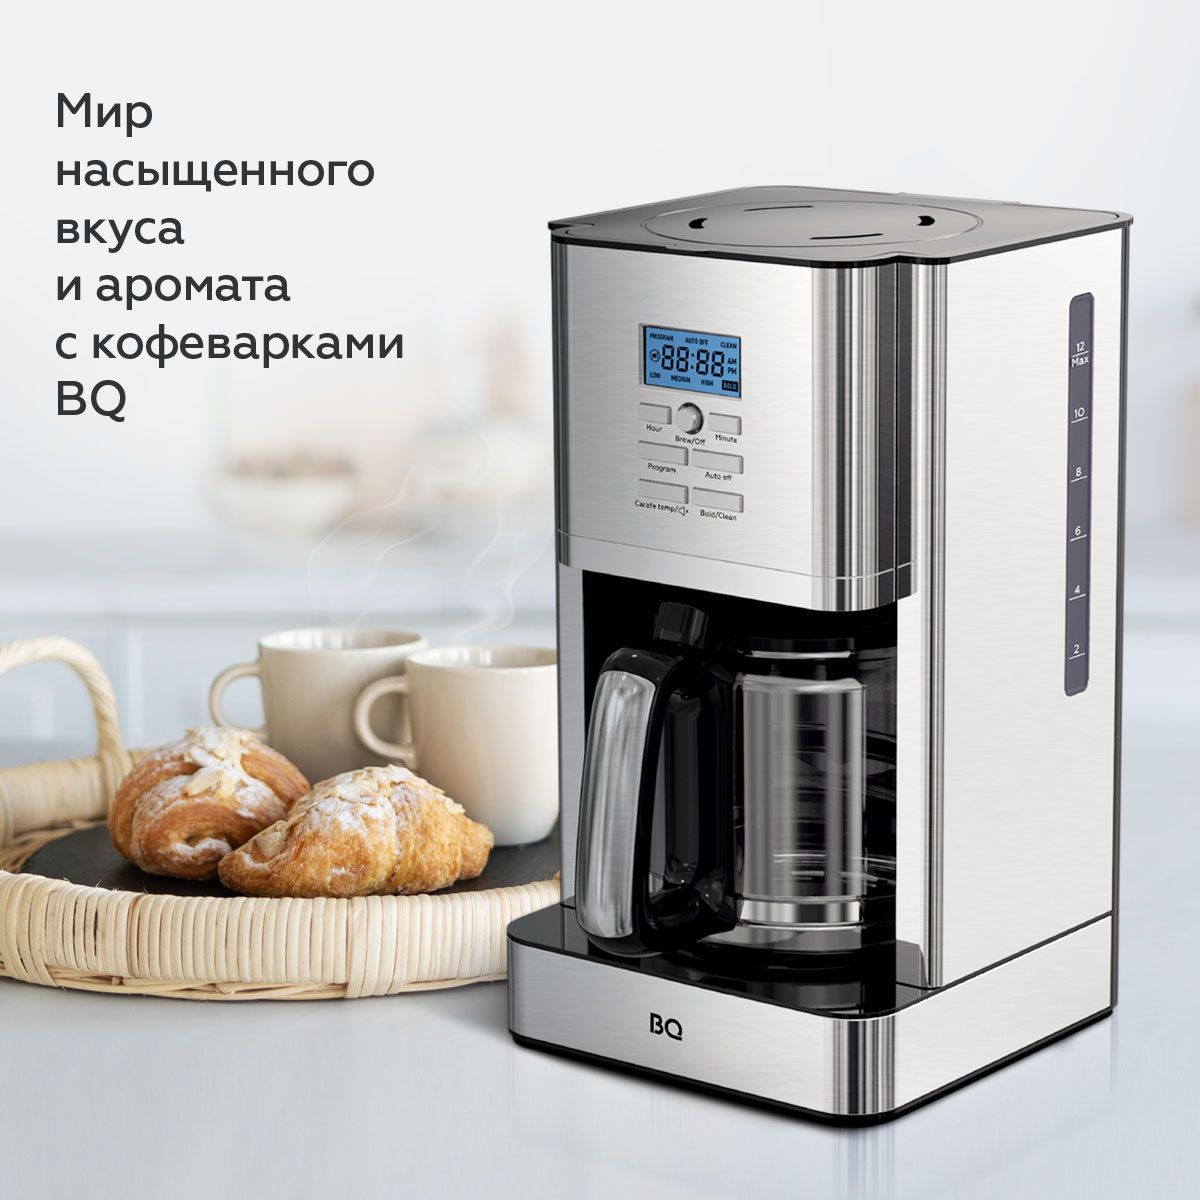 Капельная кофеварка bq. Кофемашина автоматическая BQ cm6000 серебристый, черный. Кофеварка BQ cm3001 Steel-Black. Кофеварка 2 в 1 BQ cm1005. Кофеапарат BQ cm1009 2в1.